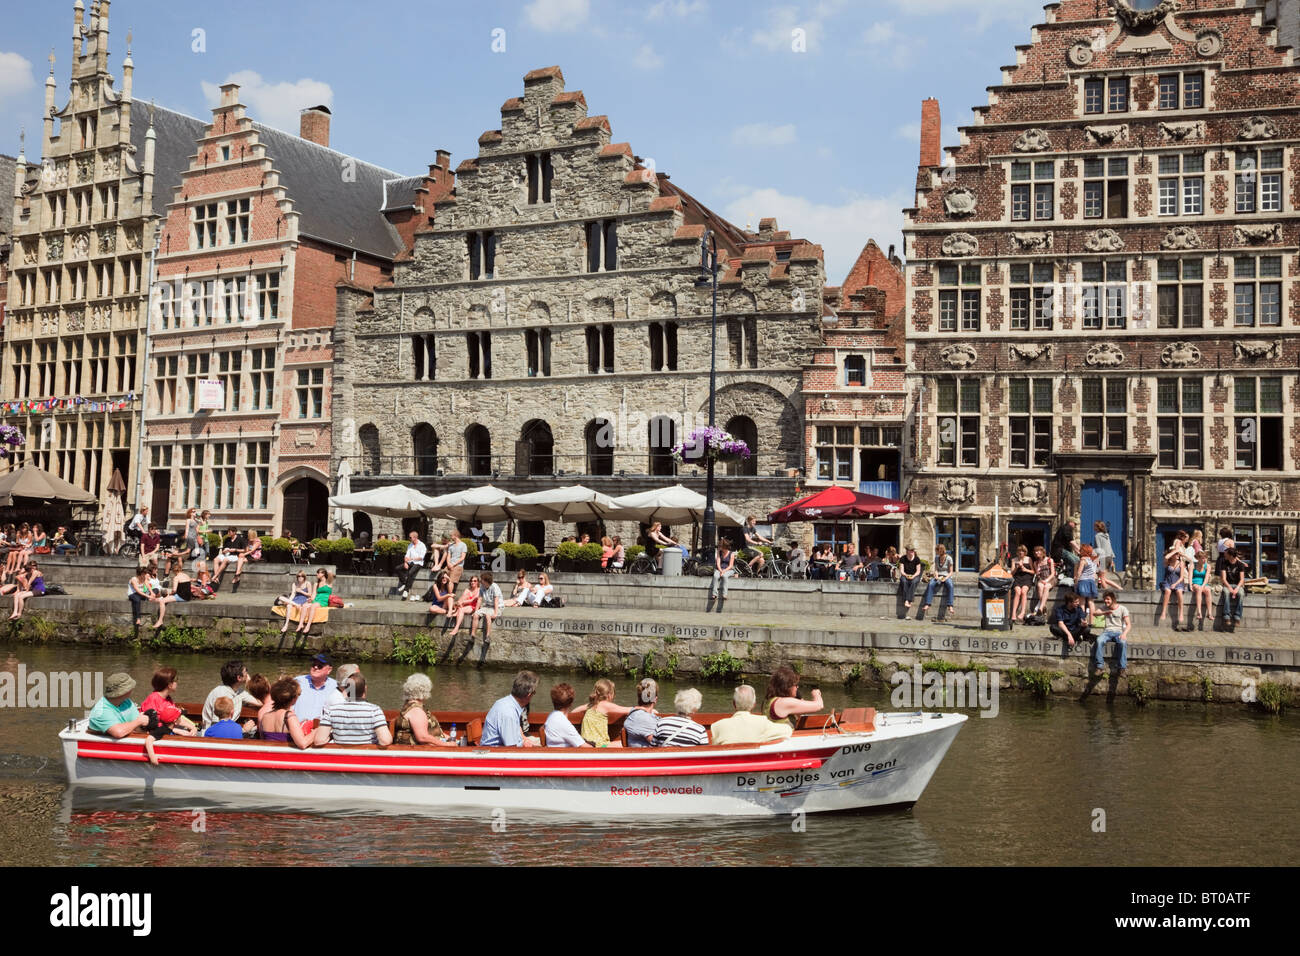 Graslei Site, Gand, Flandre orientale, Belgique, les touristes dans des bateaux touristiques sur la rivière Lys flamand médiéval avec maisons de guilde Banque D'Images